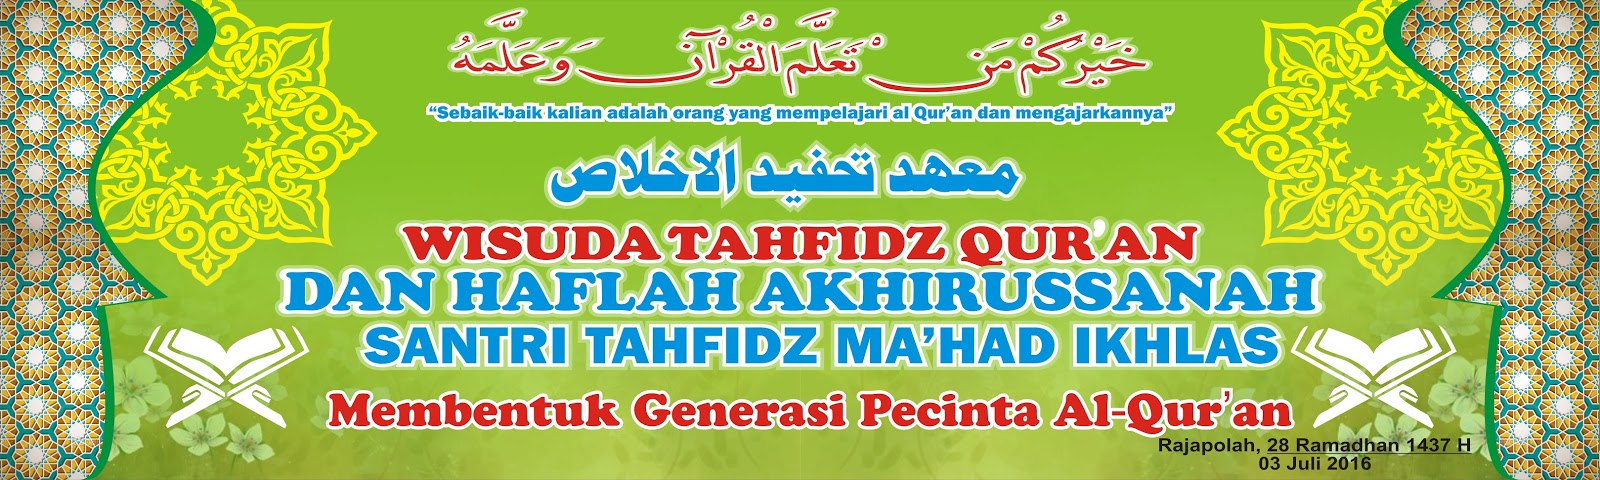 Background Banner  Haflah Akhirussanah desain  ratuseo com